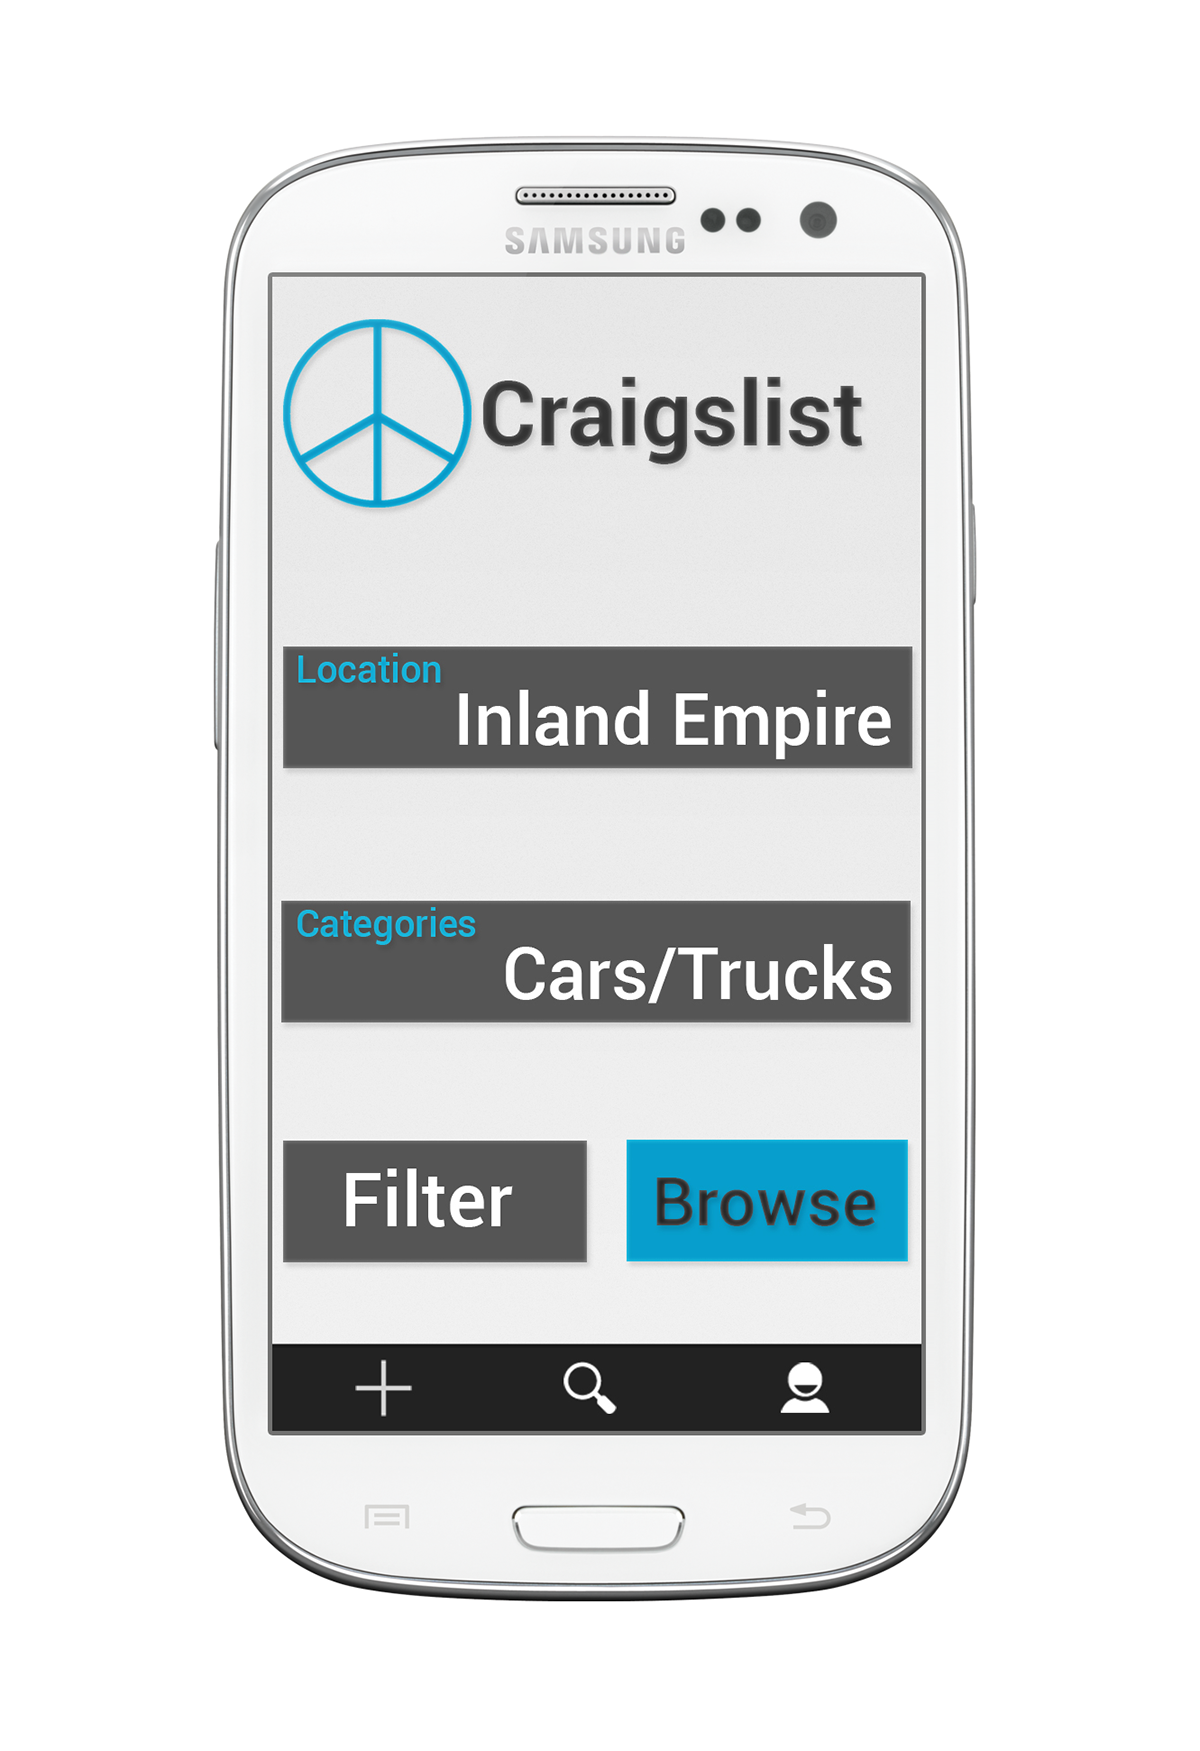 craigslist android app design